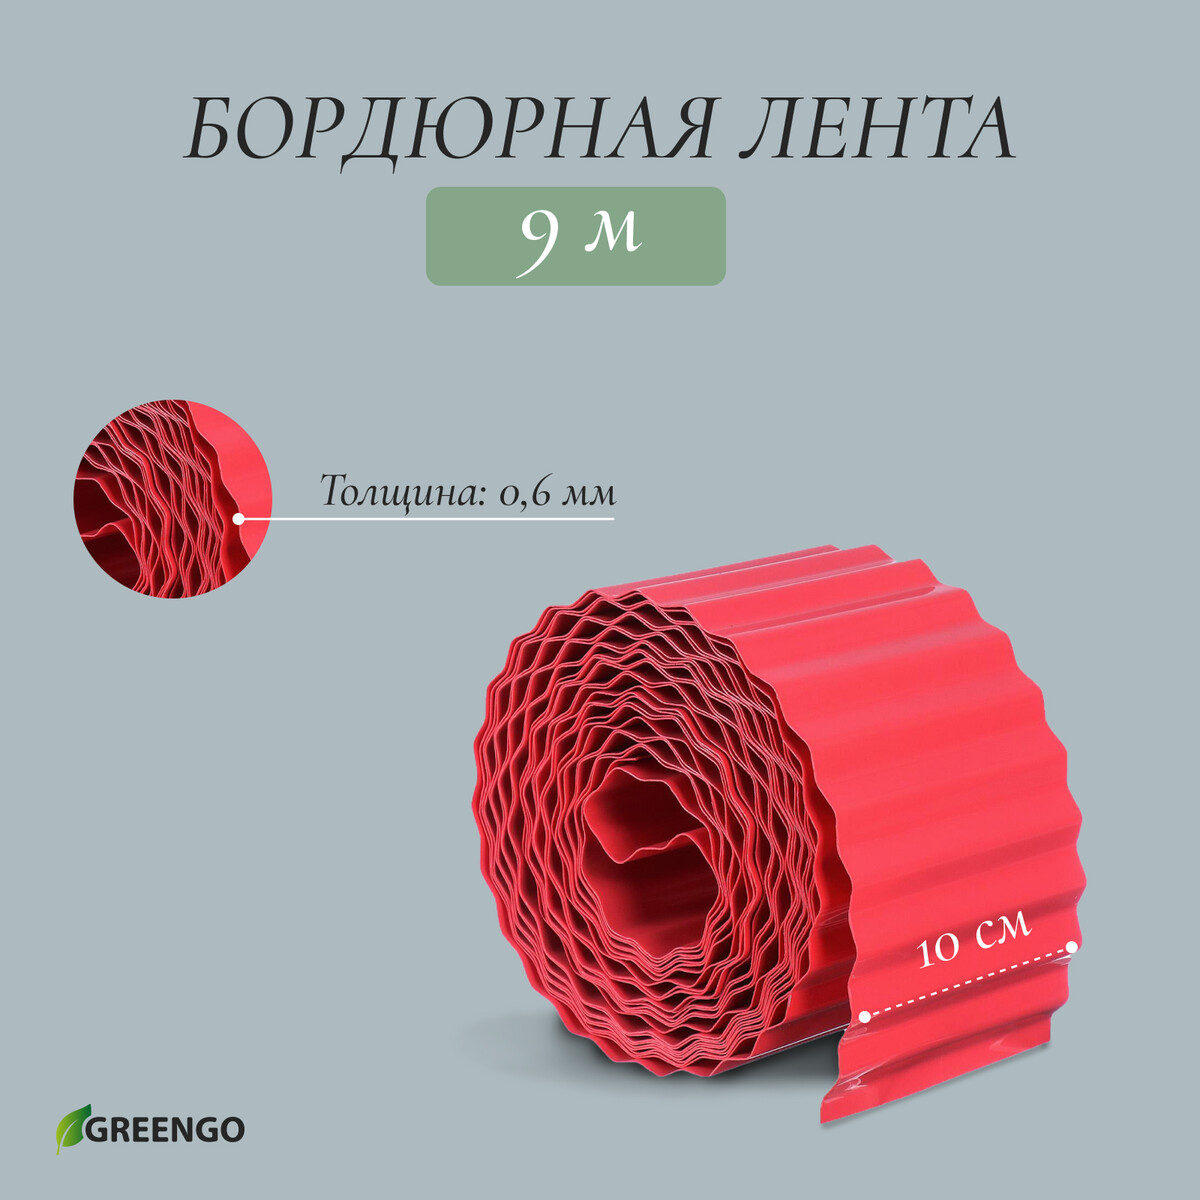 Лента бордюрная, 0.1 × 9 м, толщина 0.6 мм, пластиковая, гофра, красная Greengo, цвет красный